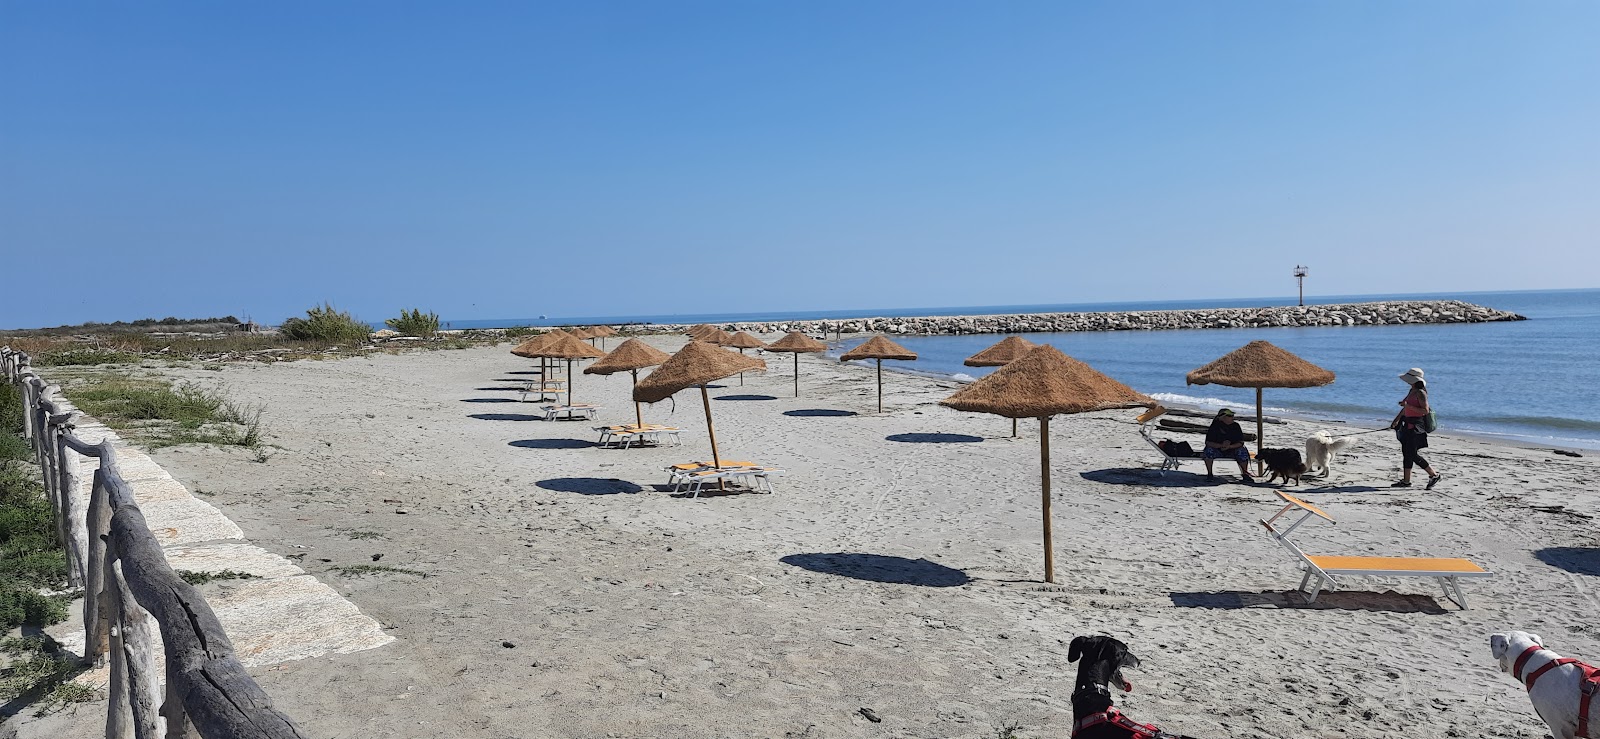 Foto de Spiaggia dell'Isola dell'Amore com praia espaçosa